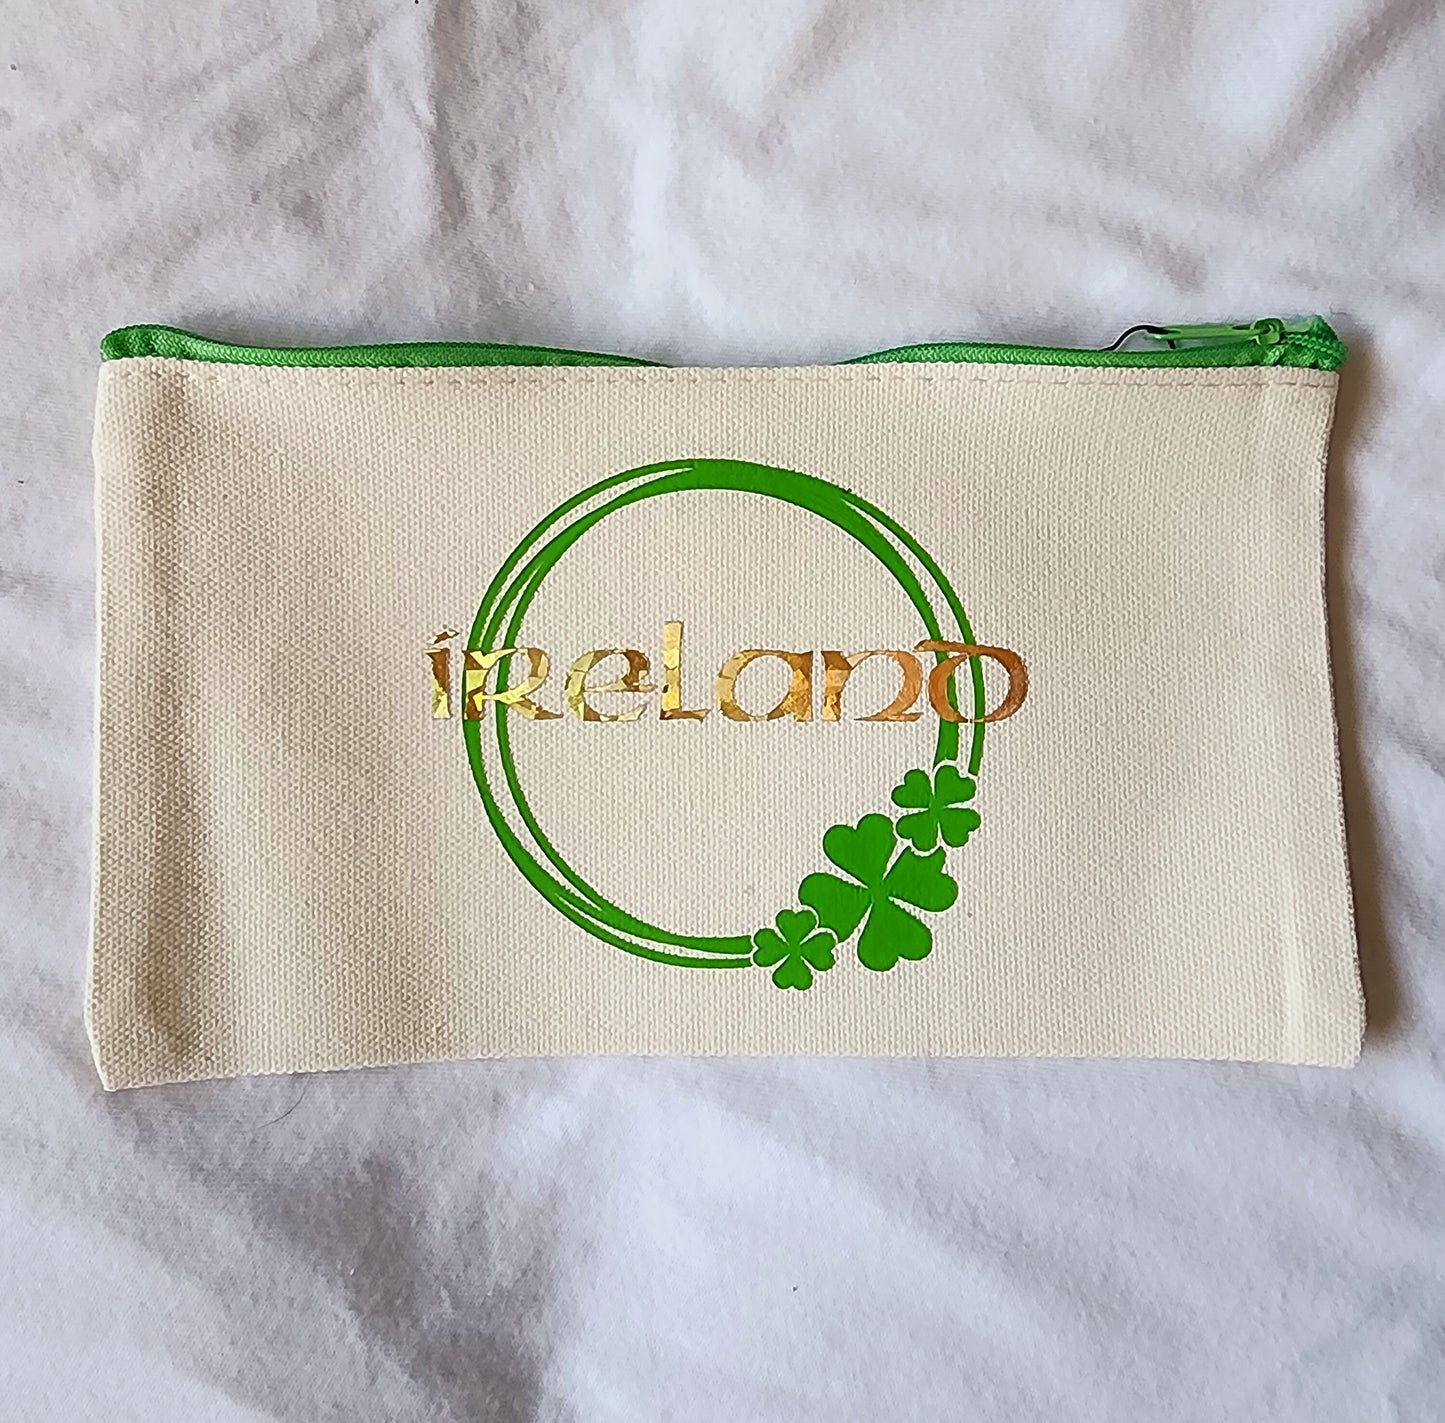 Ireland Customizable Makeup Bag, Toiletry Bag, pencil bag, small zip bag